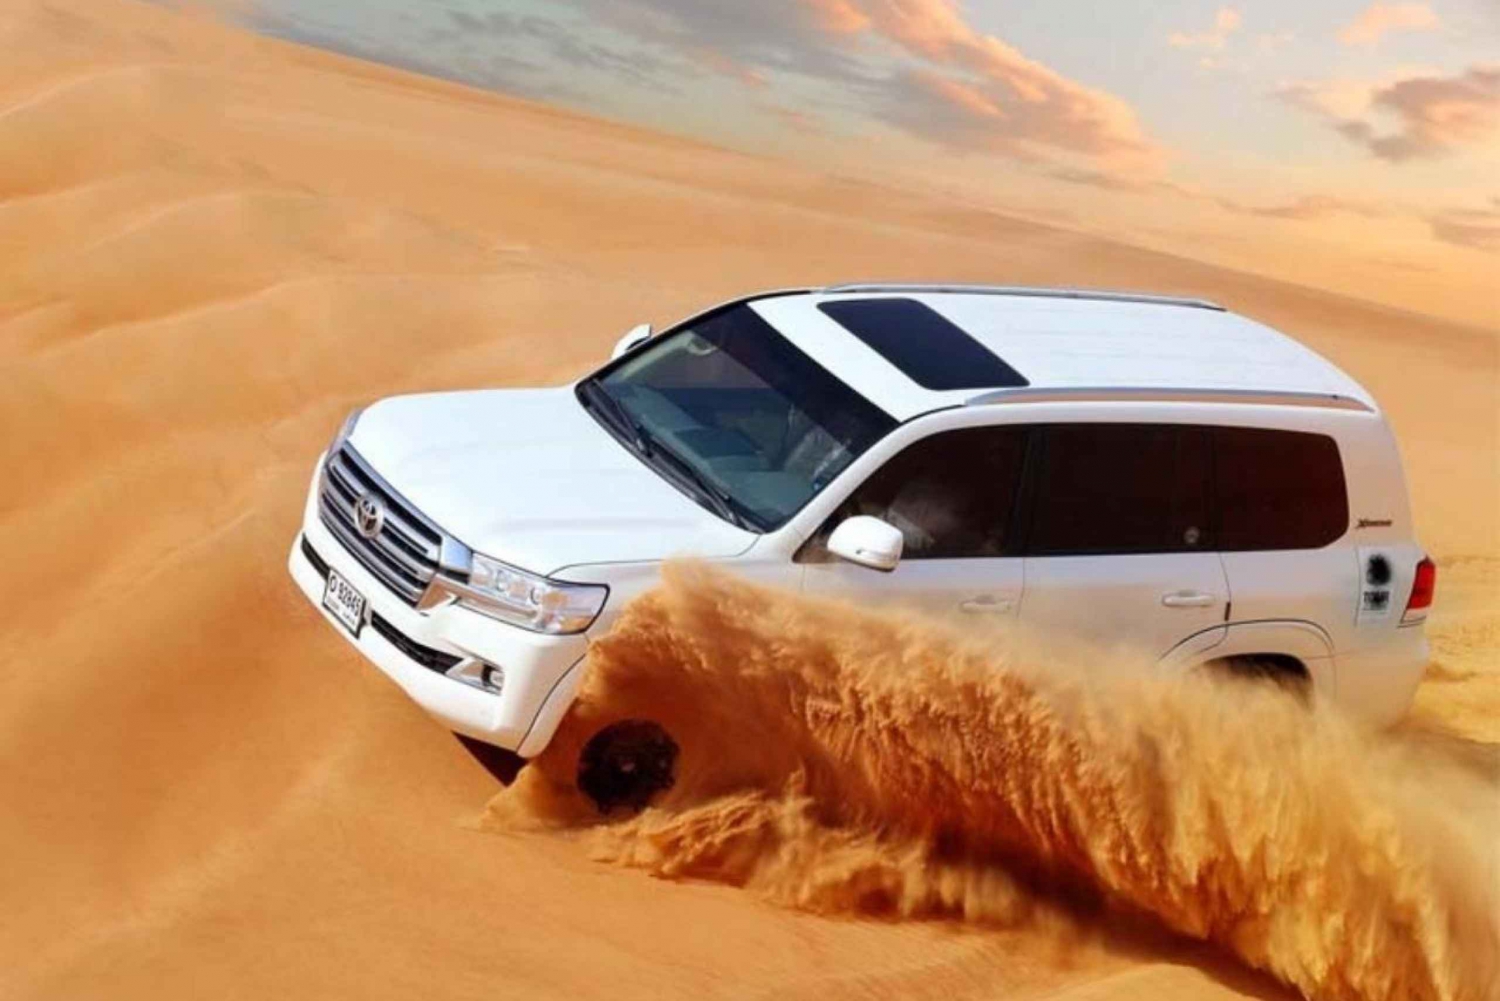 Dubai: Safáris nas dunas do deserto, camelo, sandboard, churrasco e shows